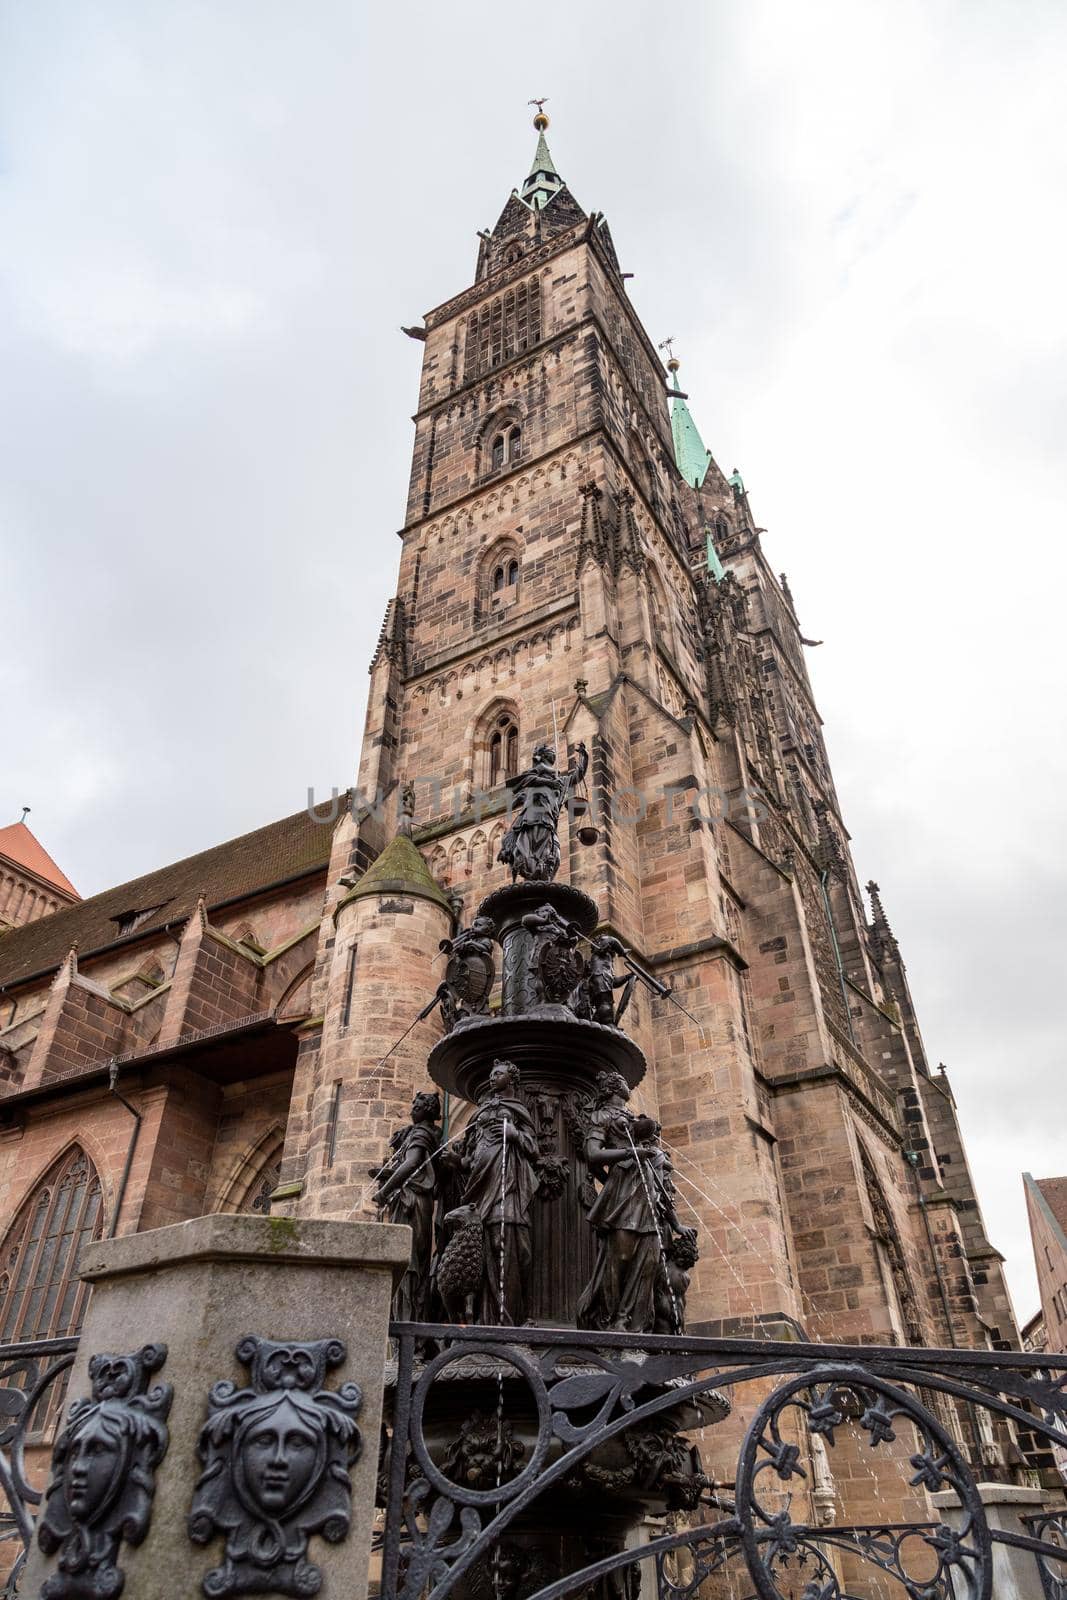 Tugendbrunnen in front of St. Lorenz church (in german Lorenzkirche) in Nuremberg, Bavaria, Germany  in autunm